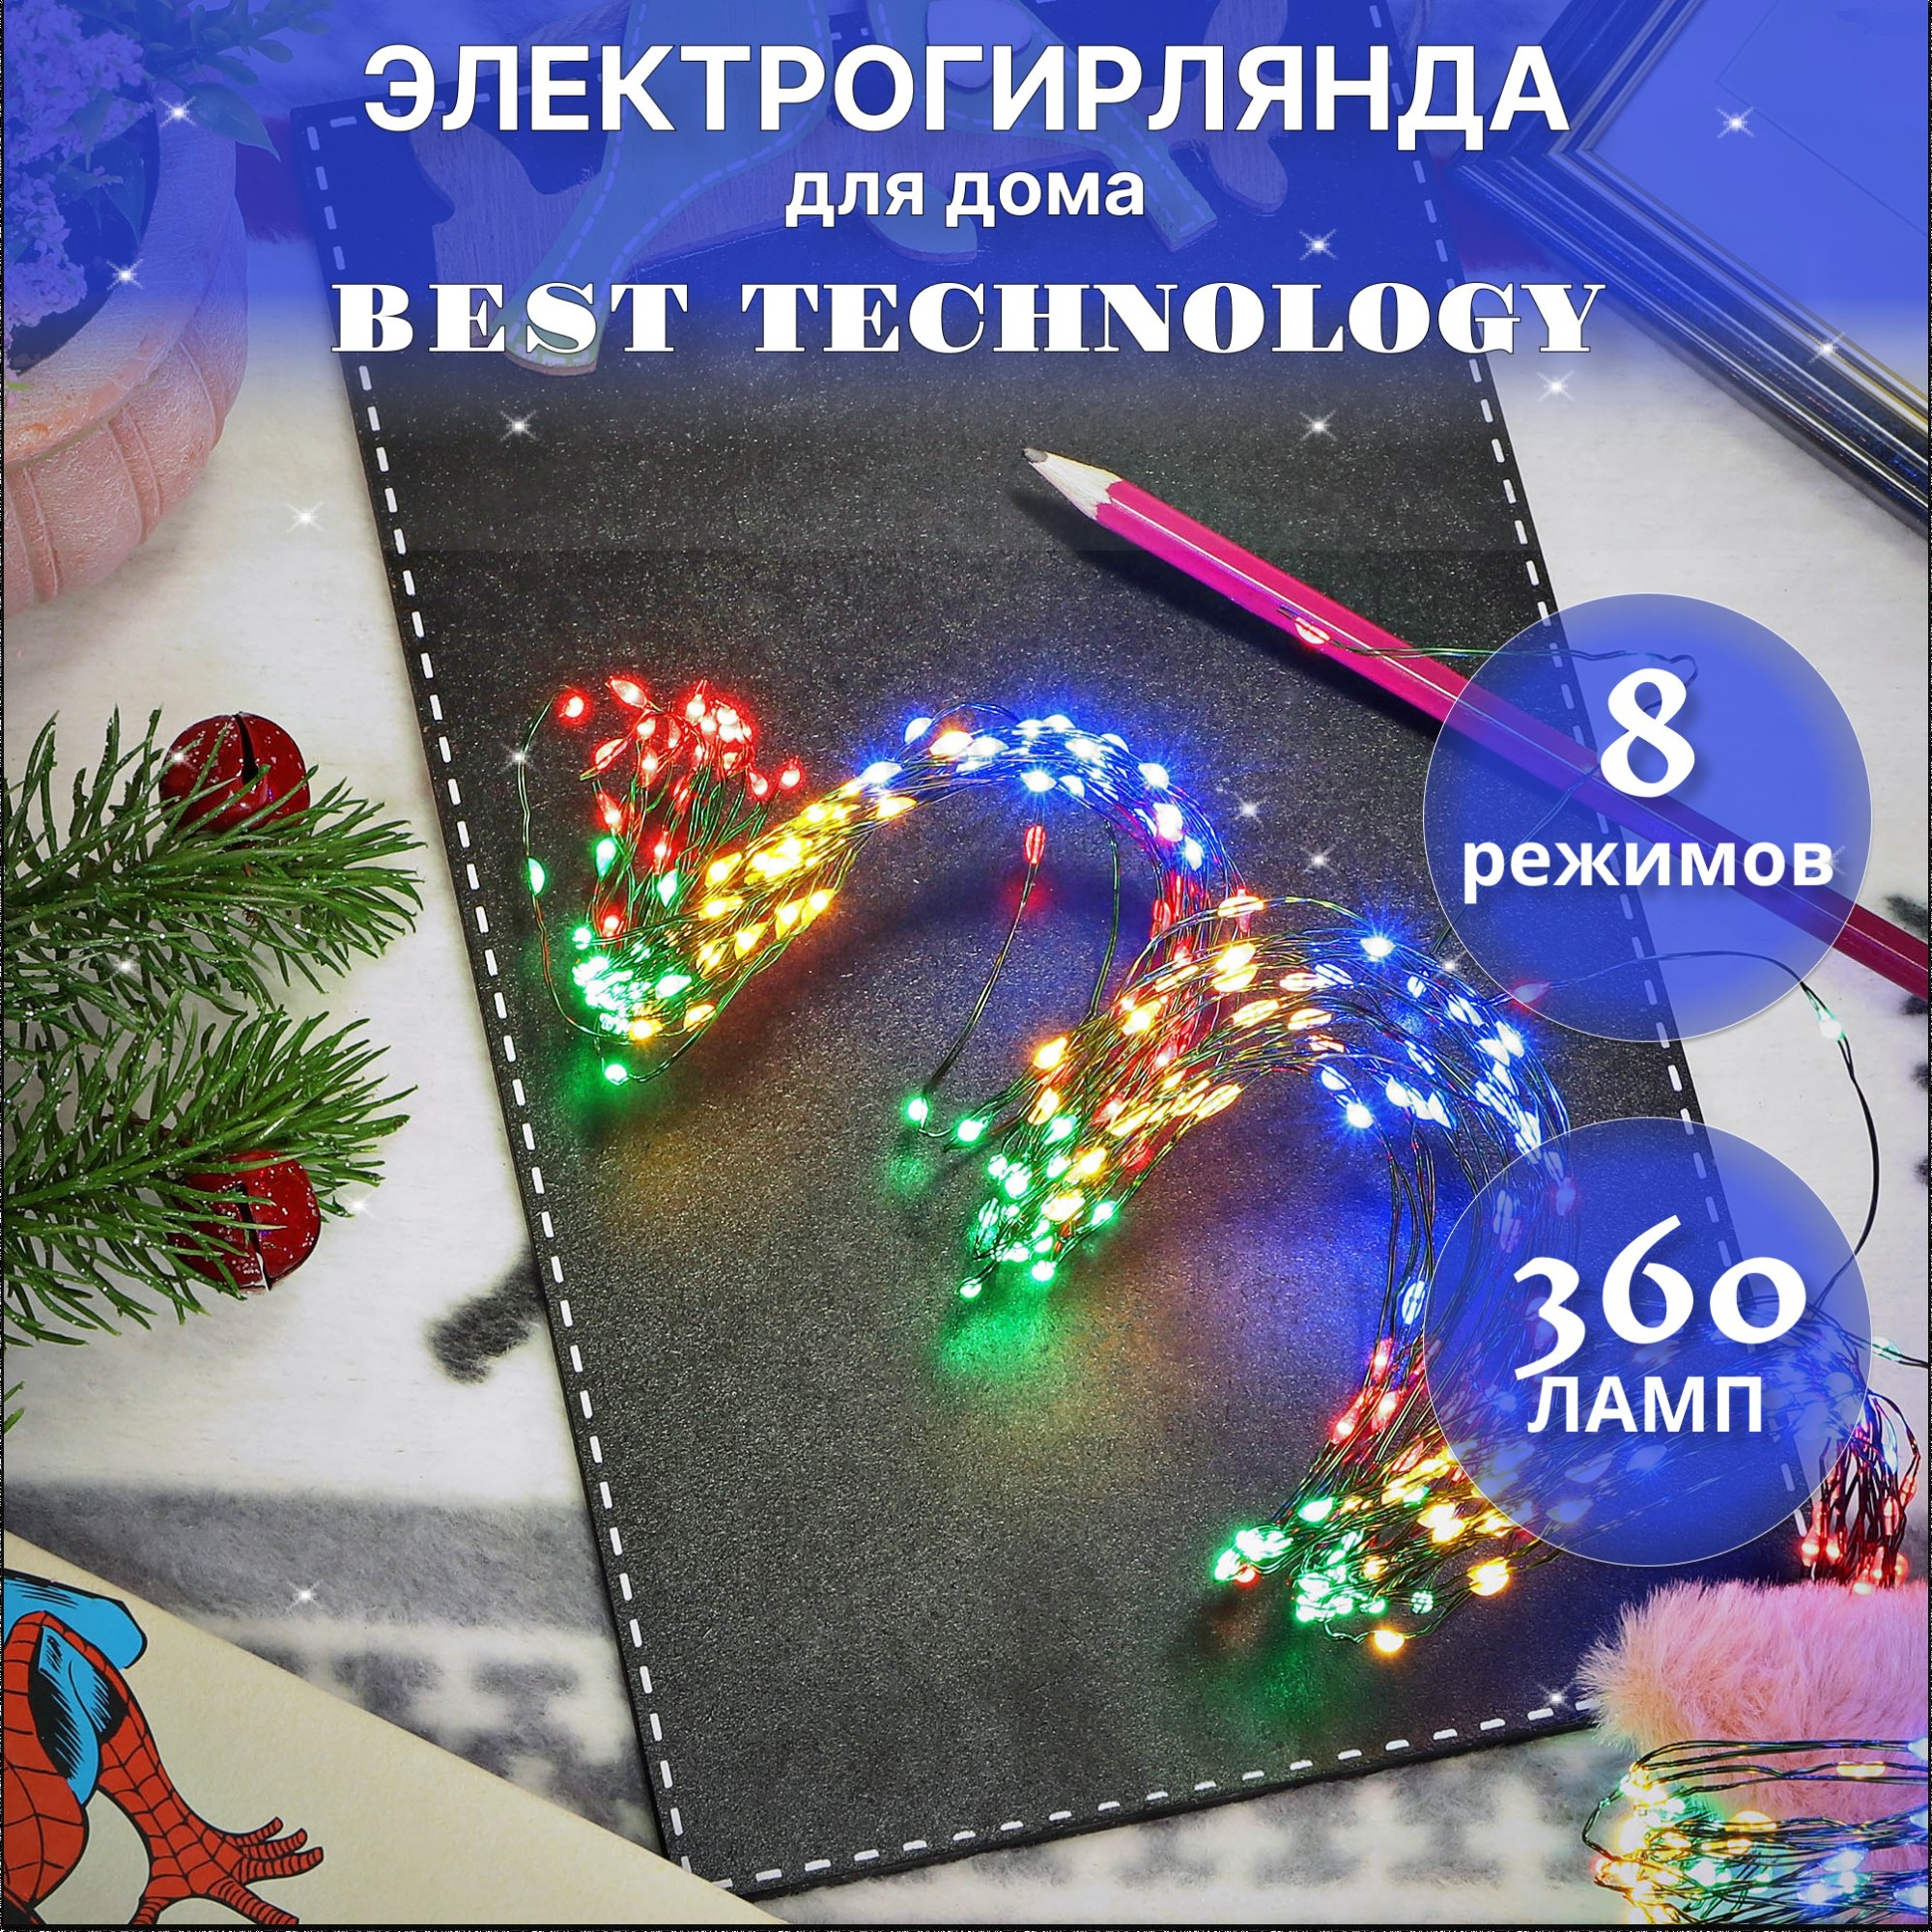 Электрогирлянда Best technology 360 led разноцветная - фото 2